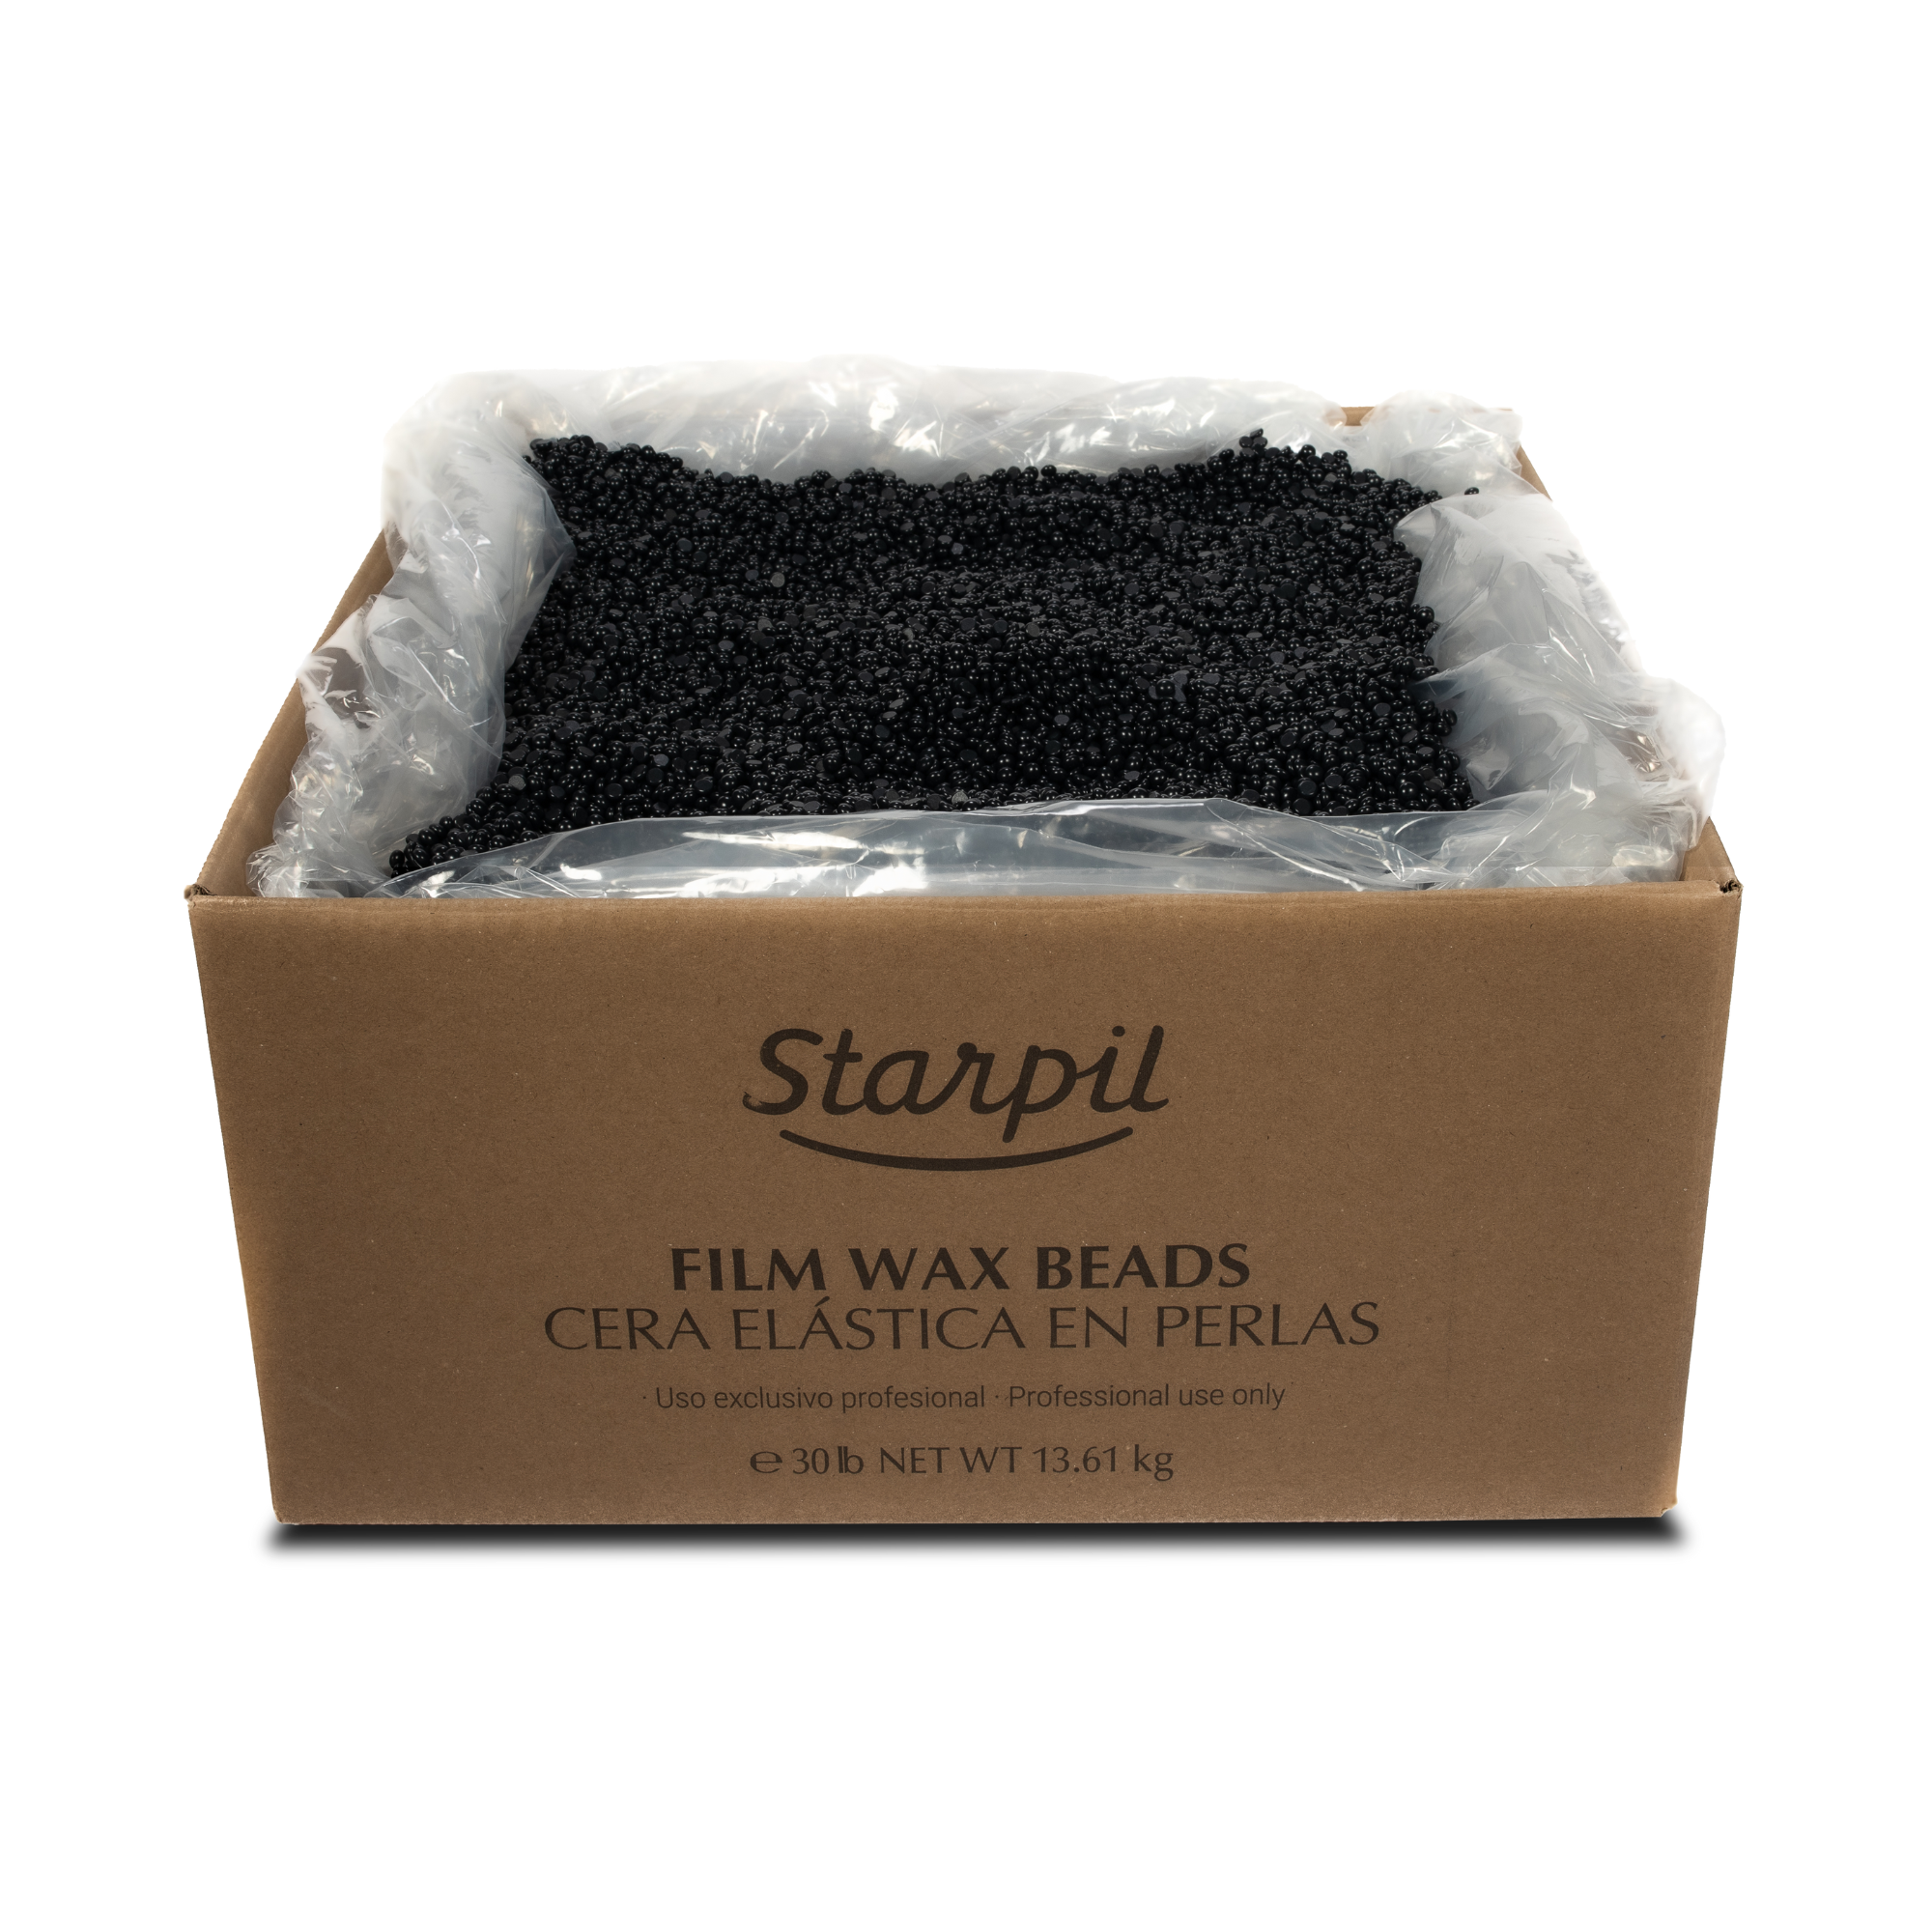 NEW Black Film Hard Wax Beads - Rosin Free - 30lb